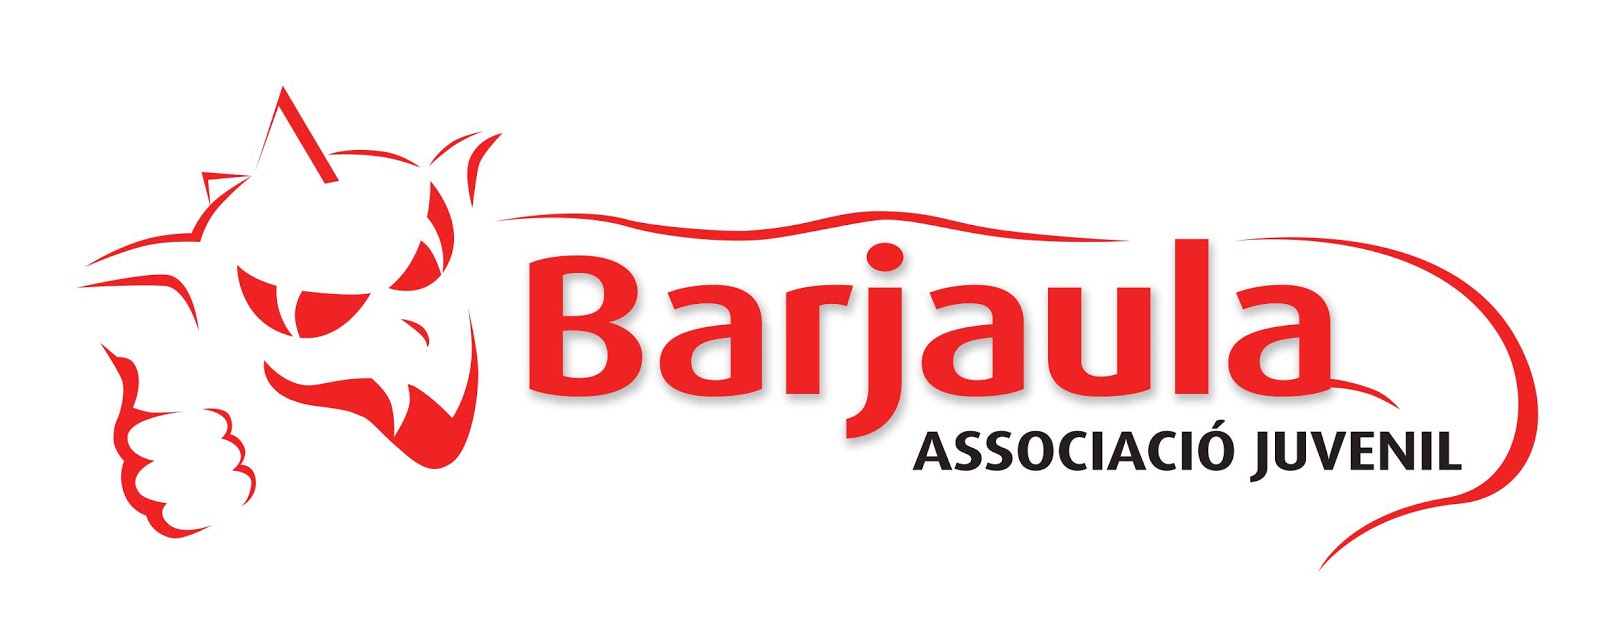 Barjaula, Associació Juvenil